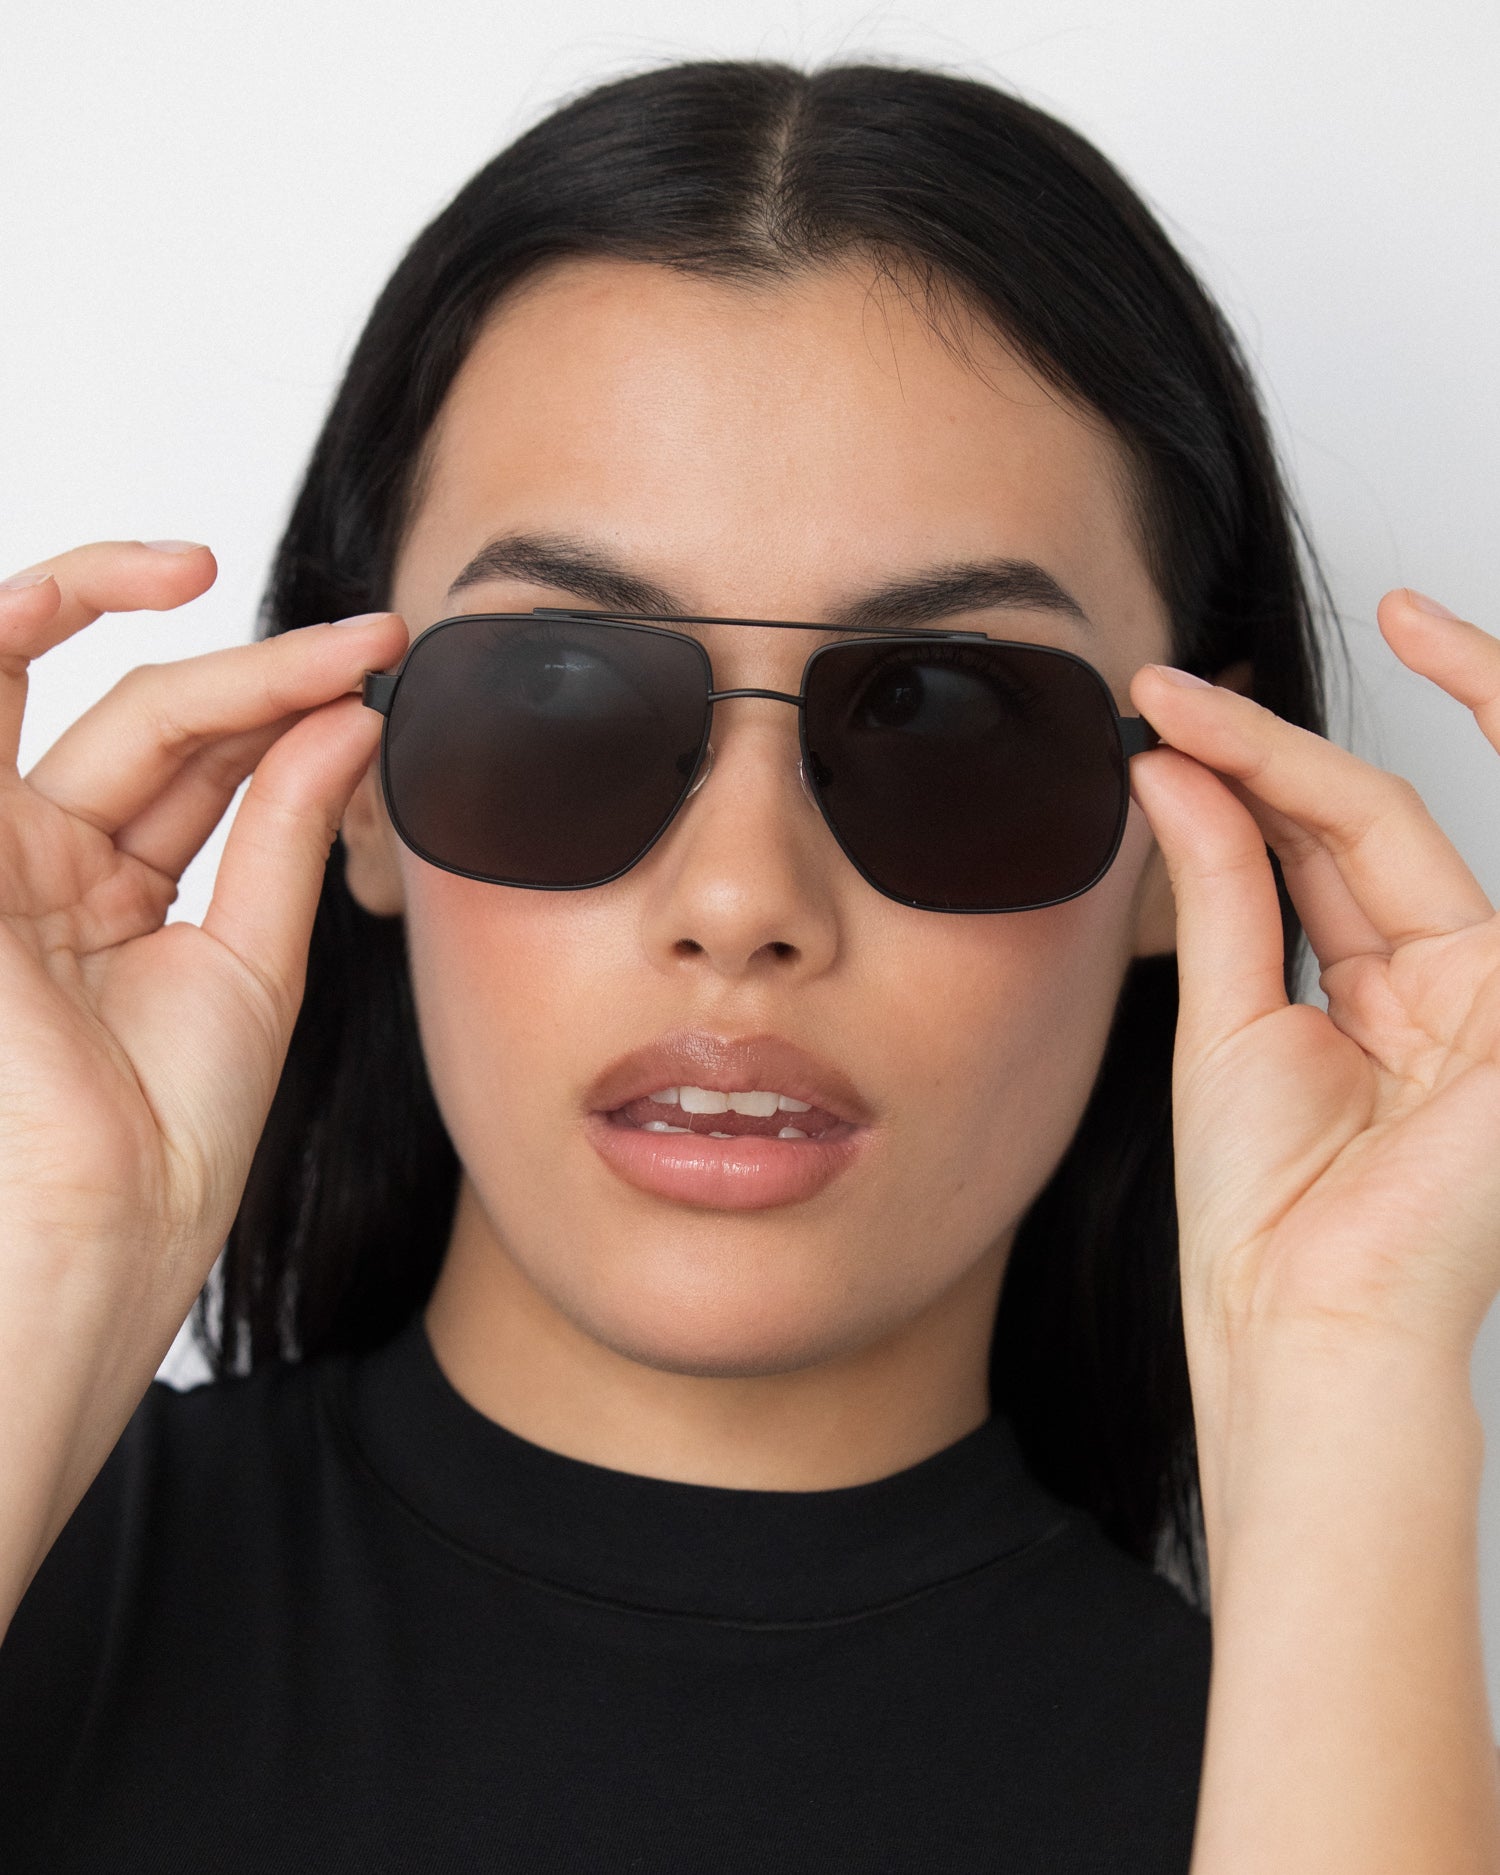 Amelia Sunglasses in Black by LU GOLDIE Eyewear